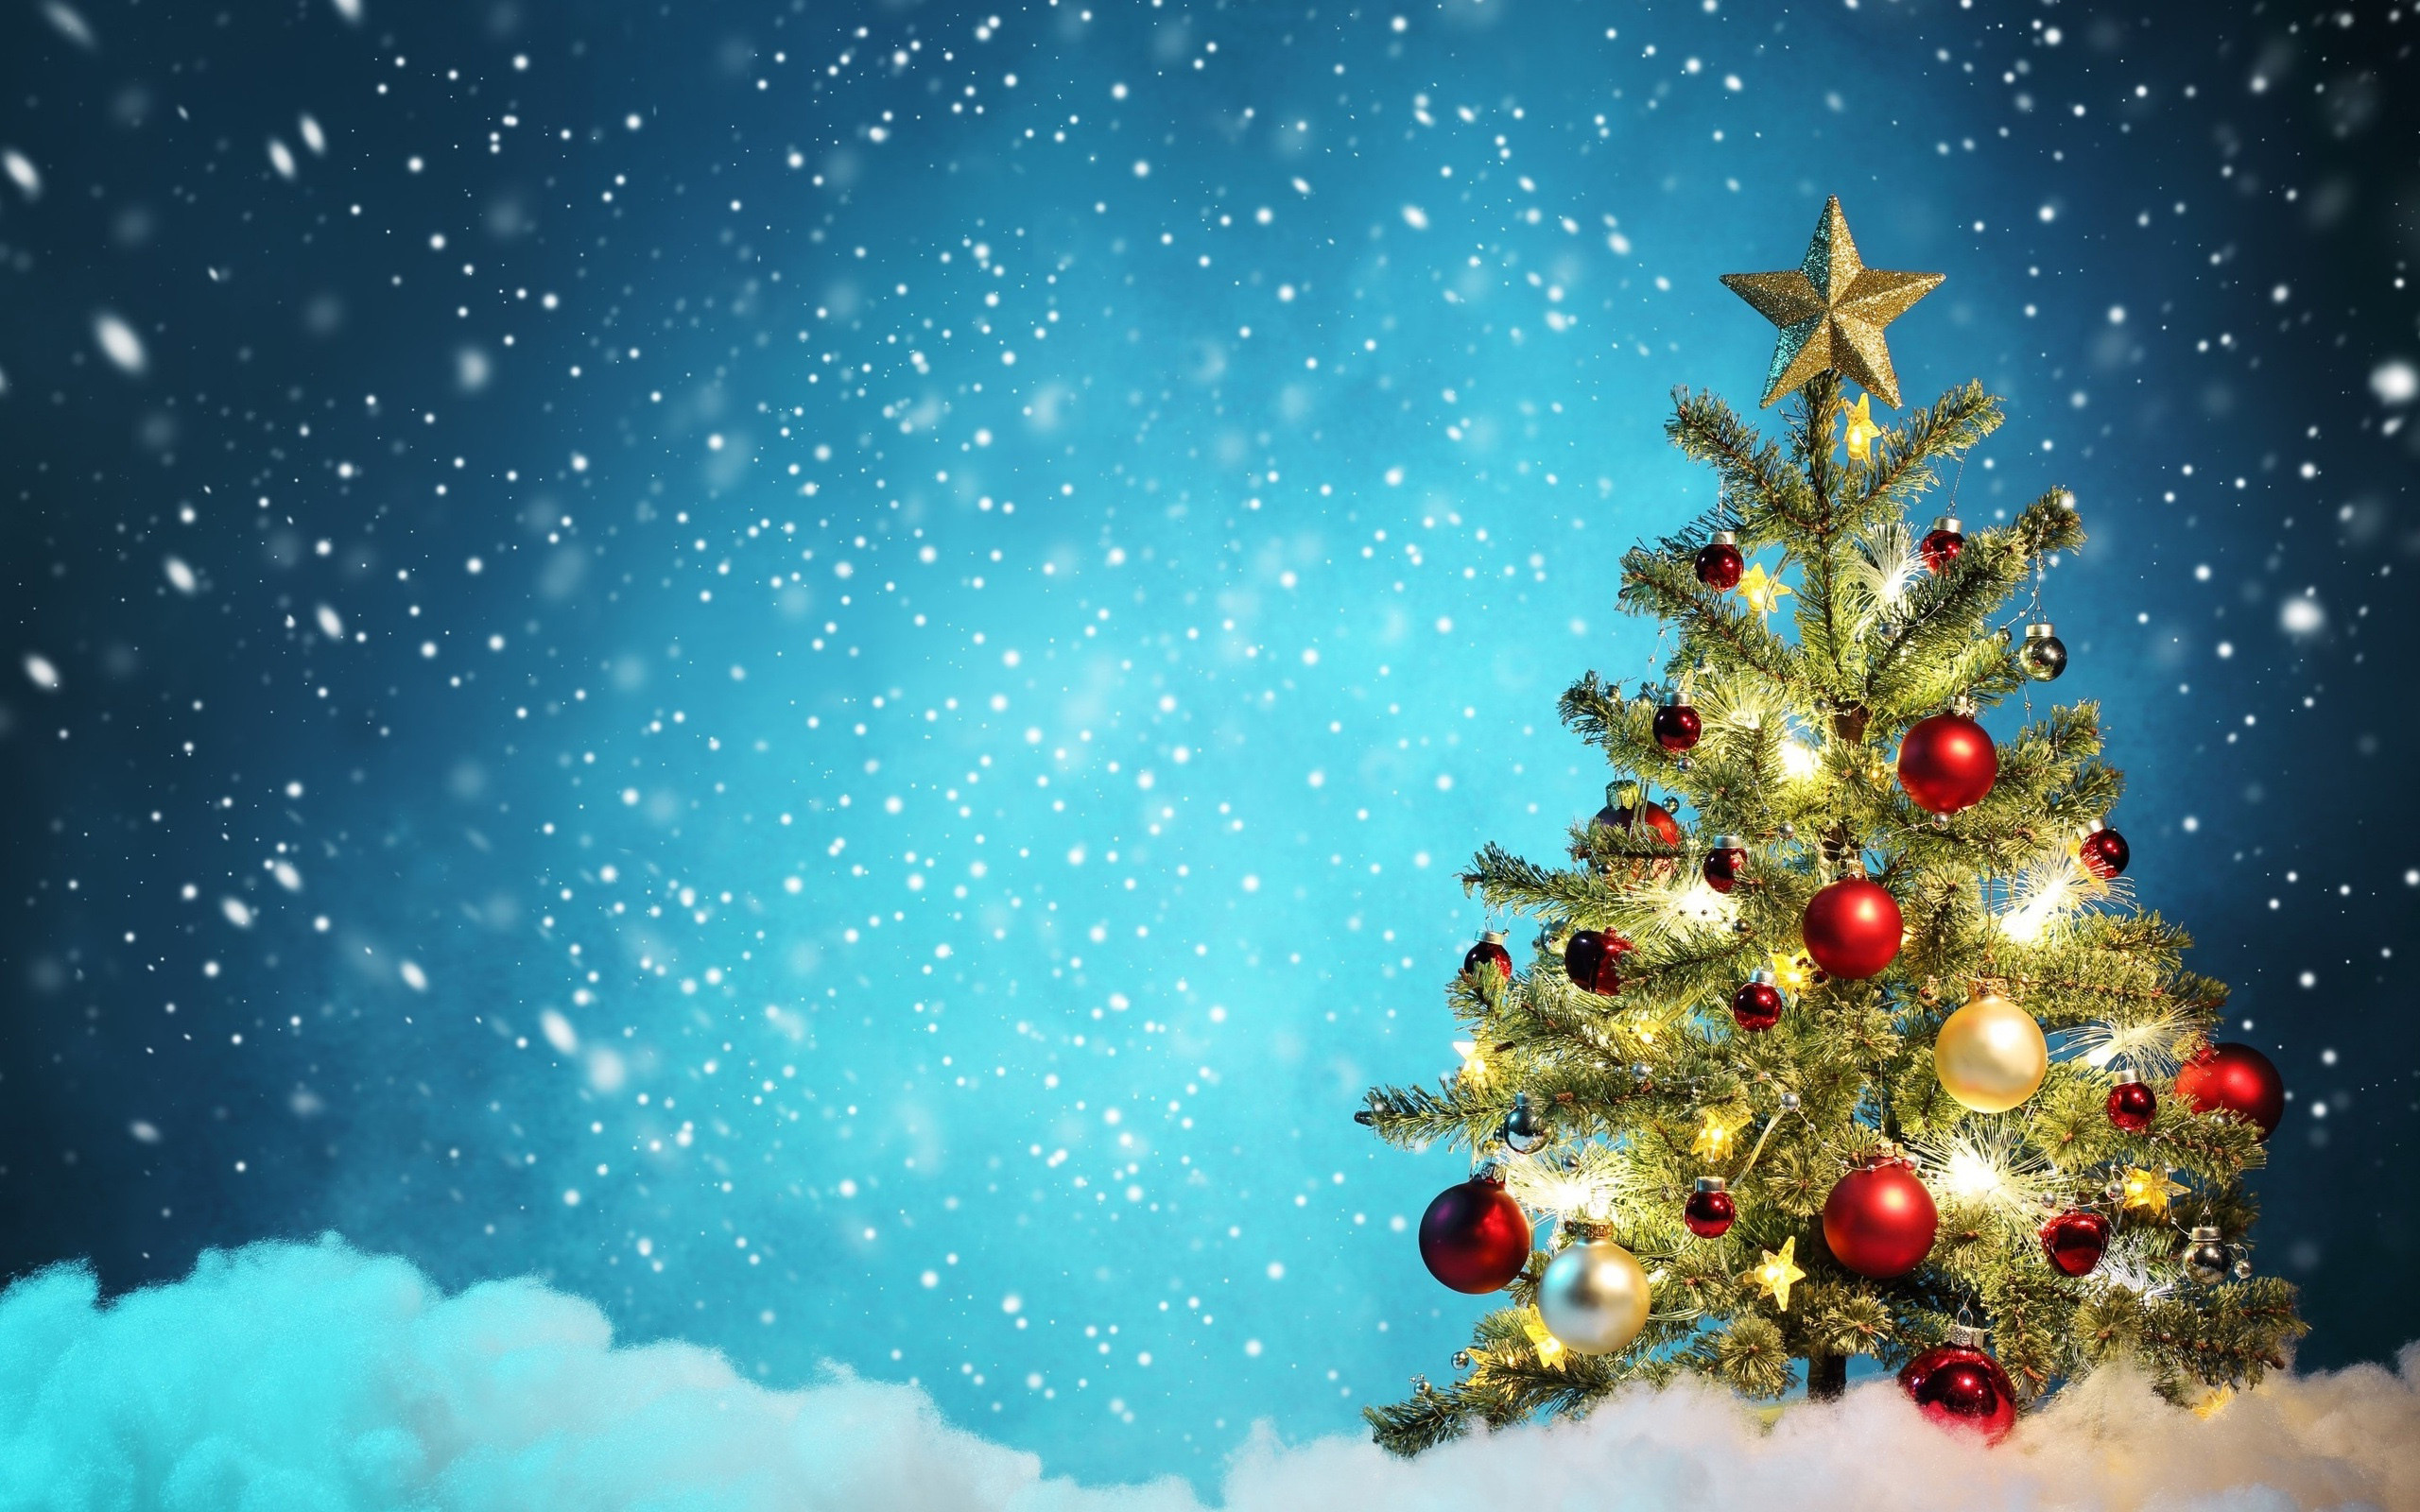 carta da parati weihnachten,albero di natale,decorazione natalizia,natale,albero,abete rosso colorado